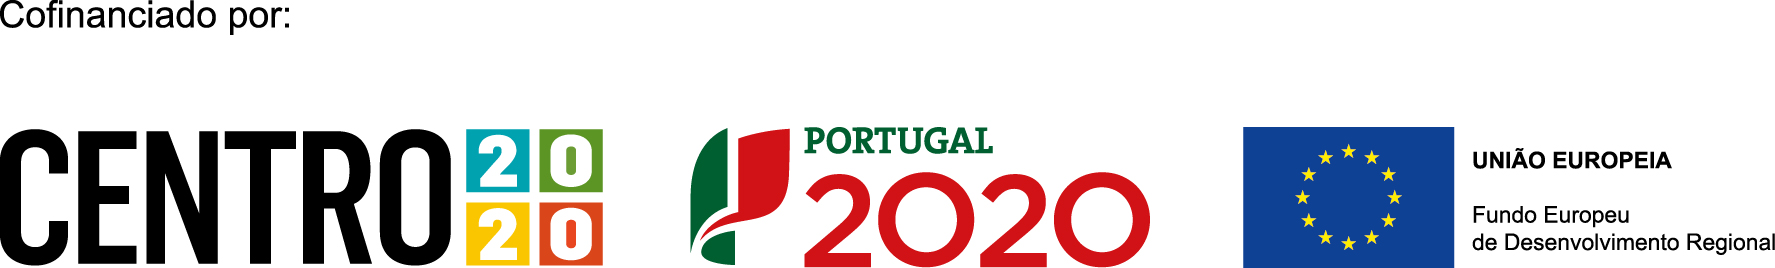 Projecto Cofinanciado por: Centro2020 - Portugal 2020 - UniÃ£o Europeia